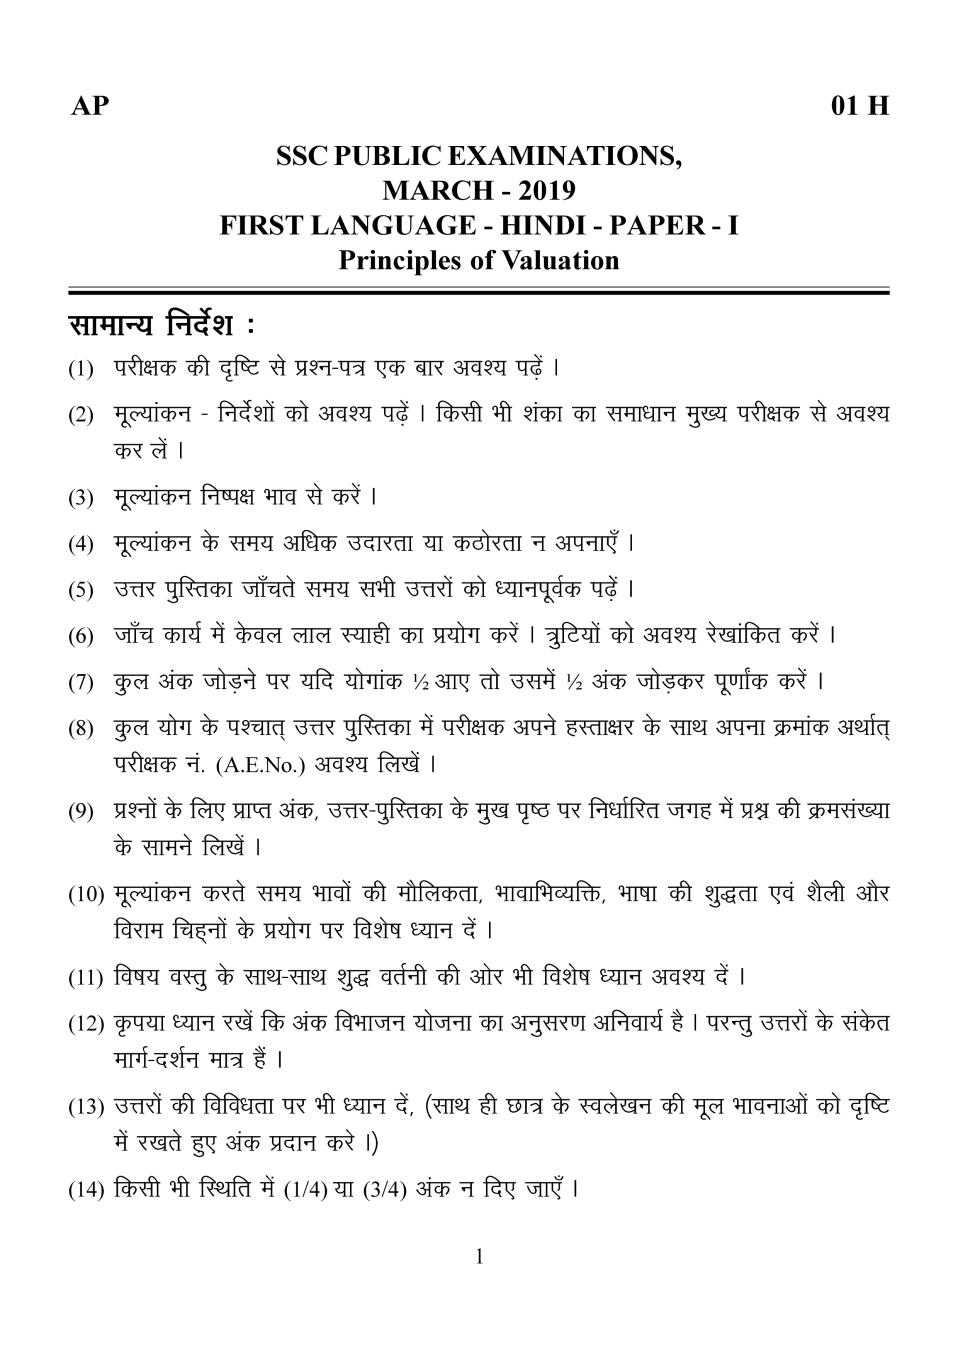 AP 10th Class Marking Scheme 2019 Hindi - Paper 1 (1st Language) - Page 1